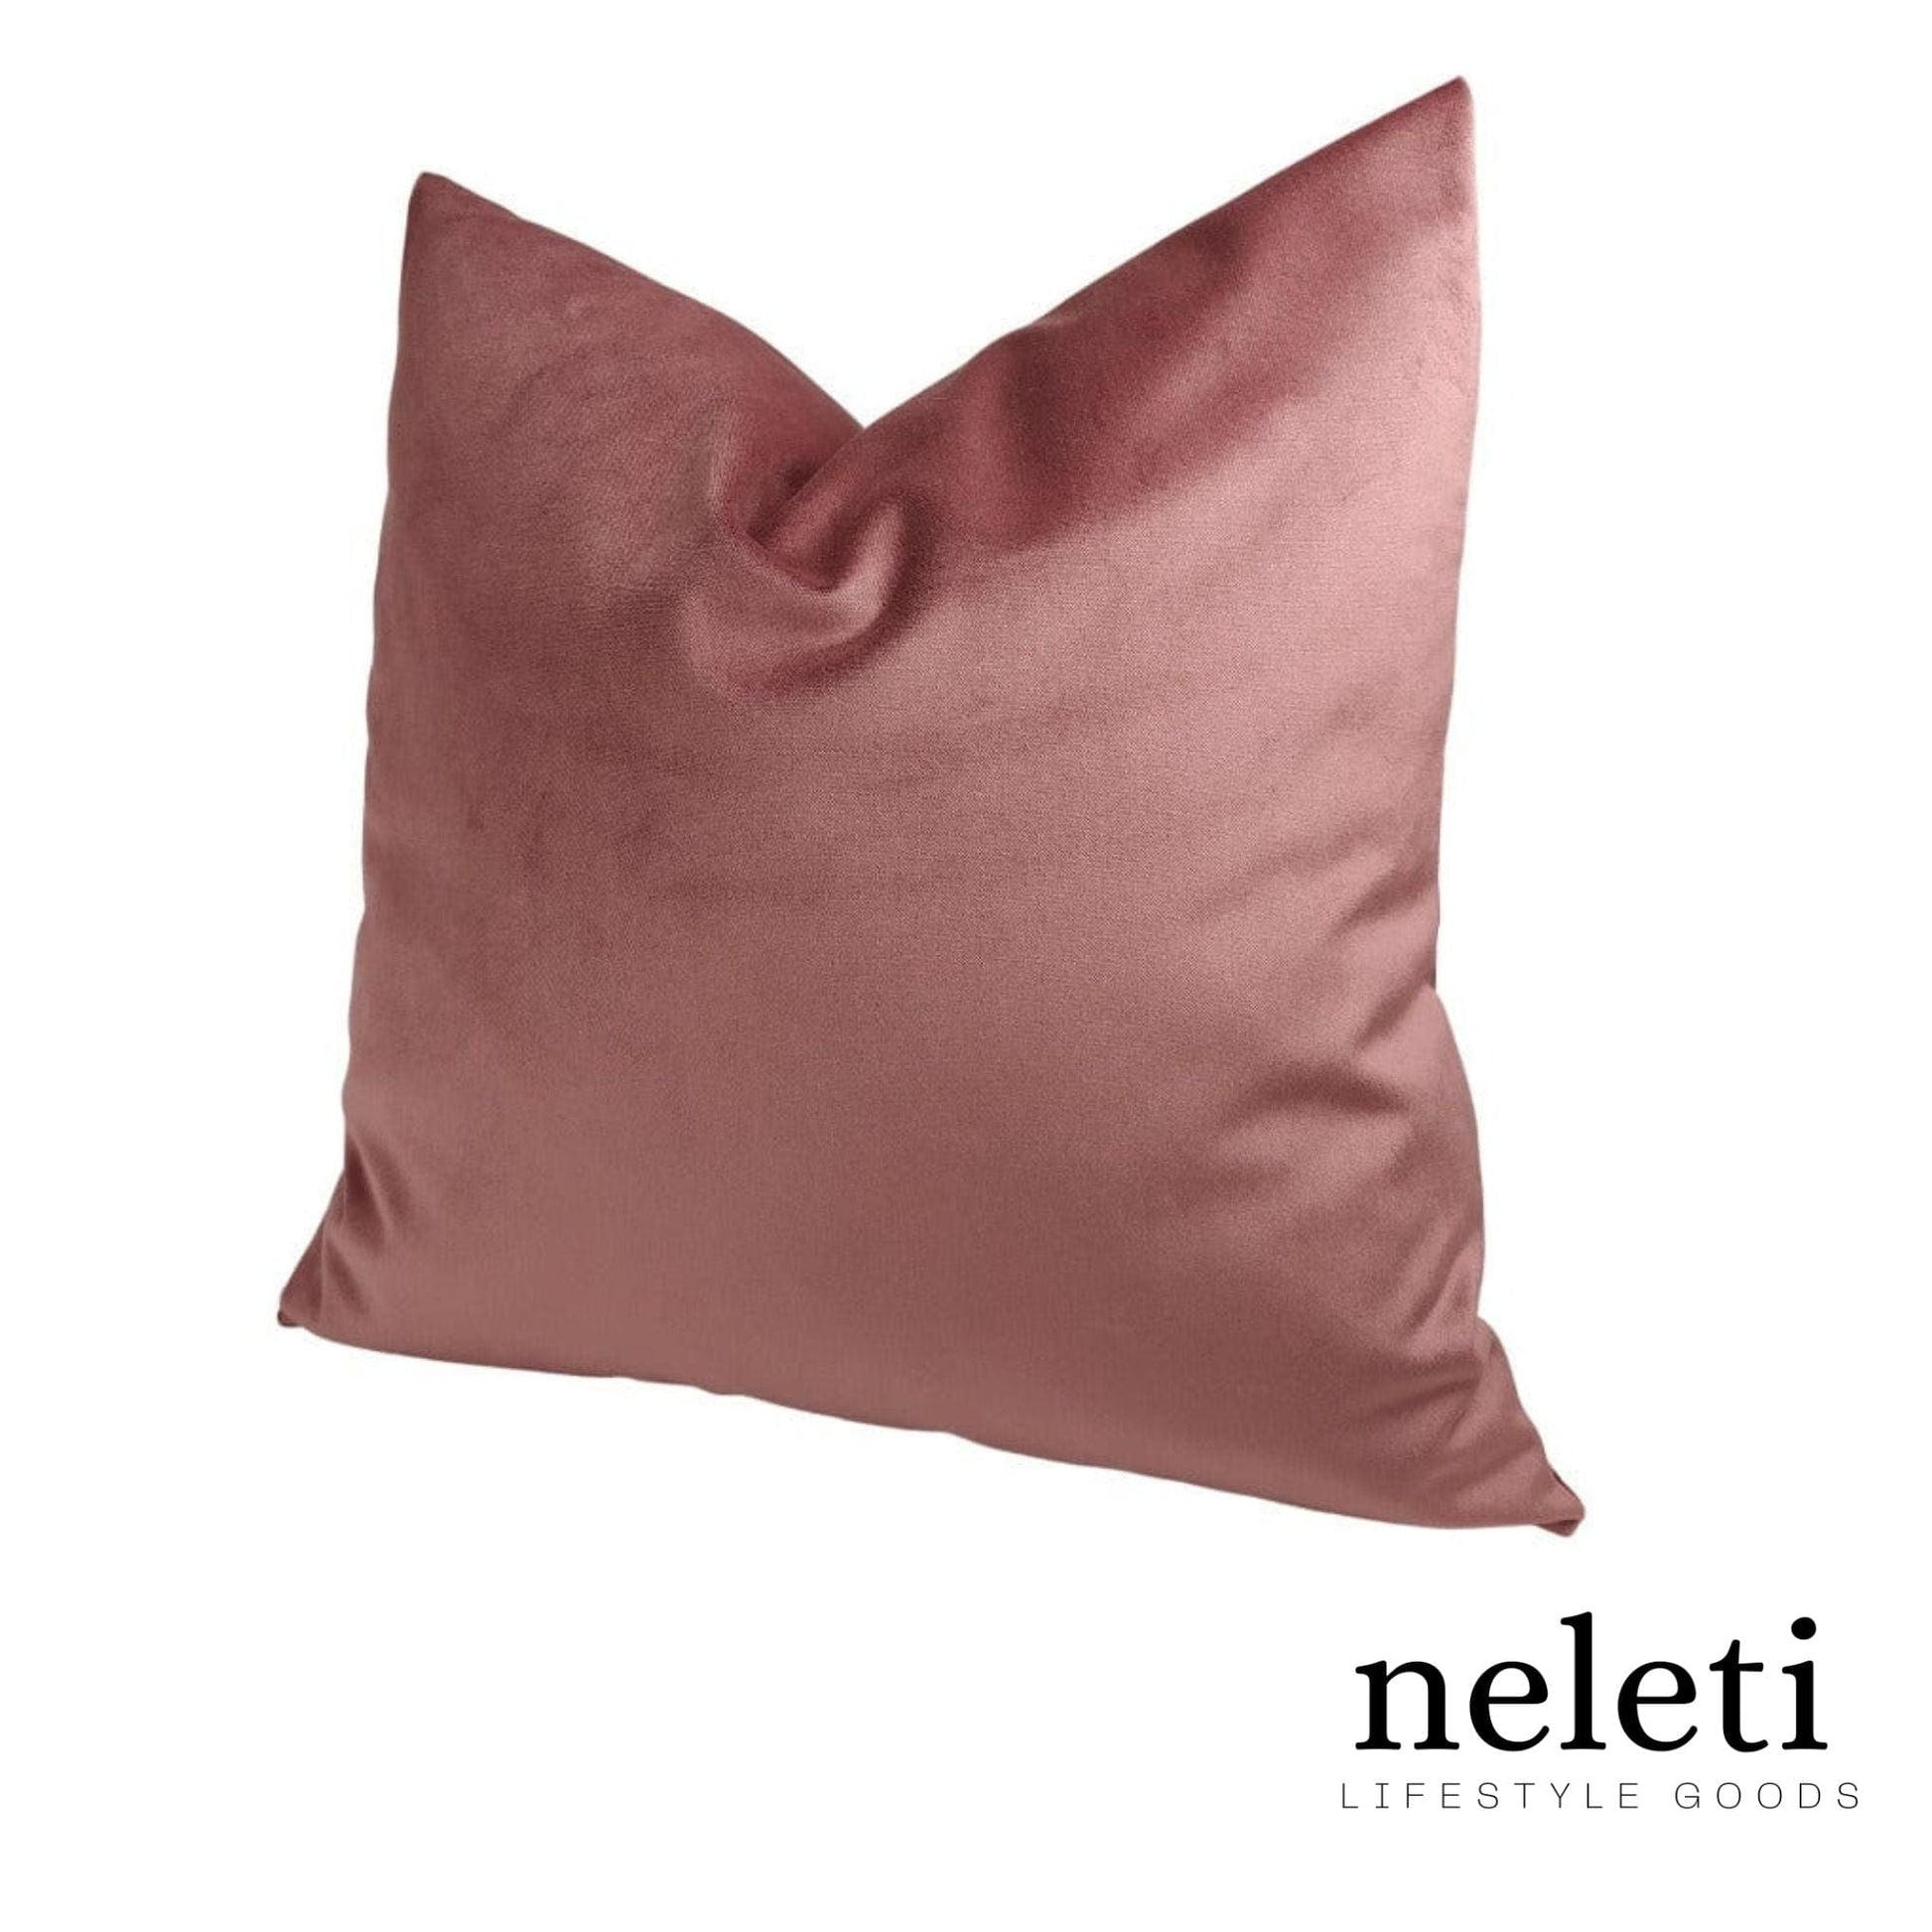 neleti.com-pink-pillow-cover